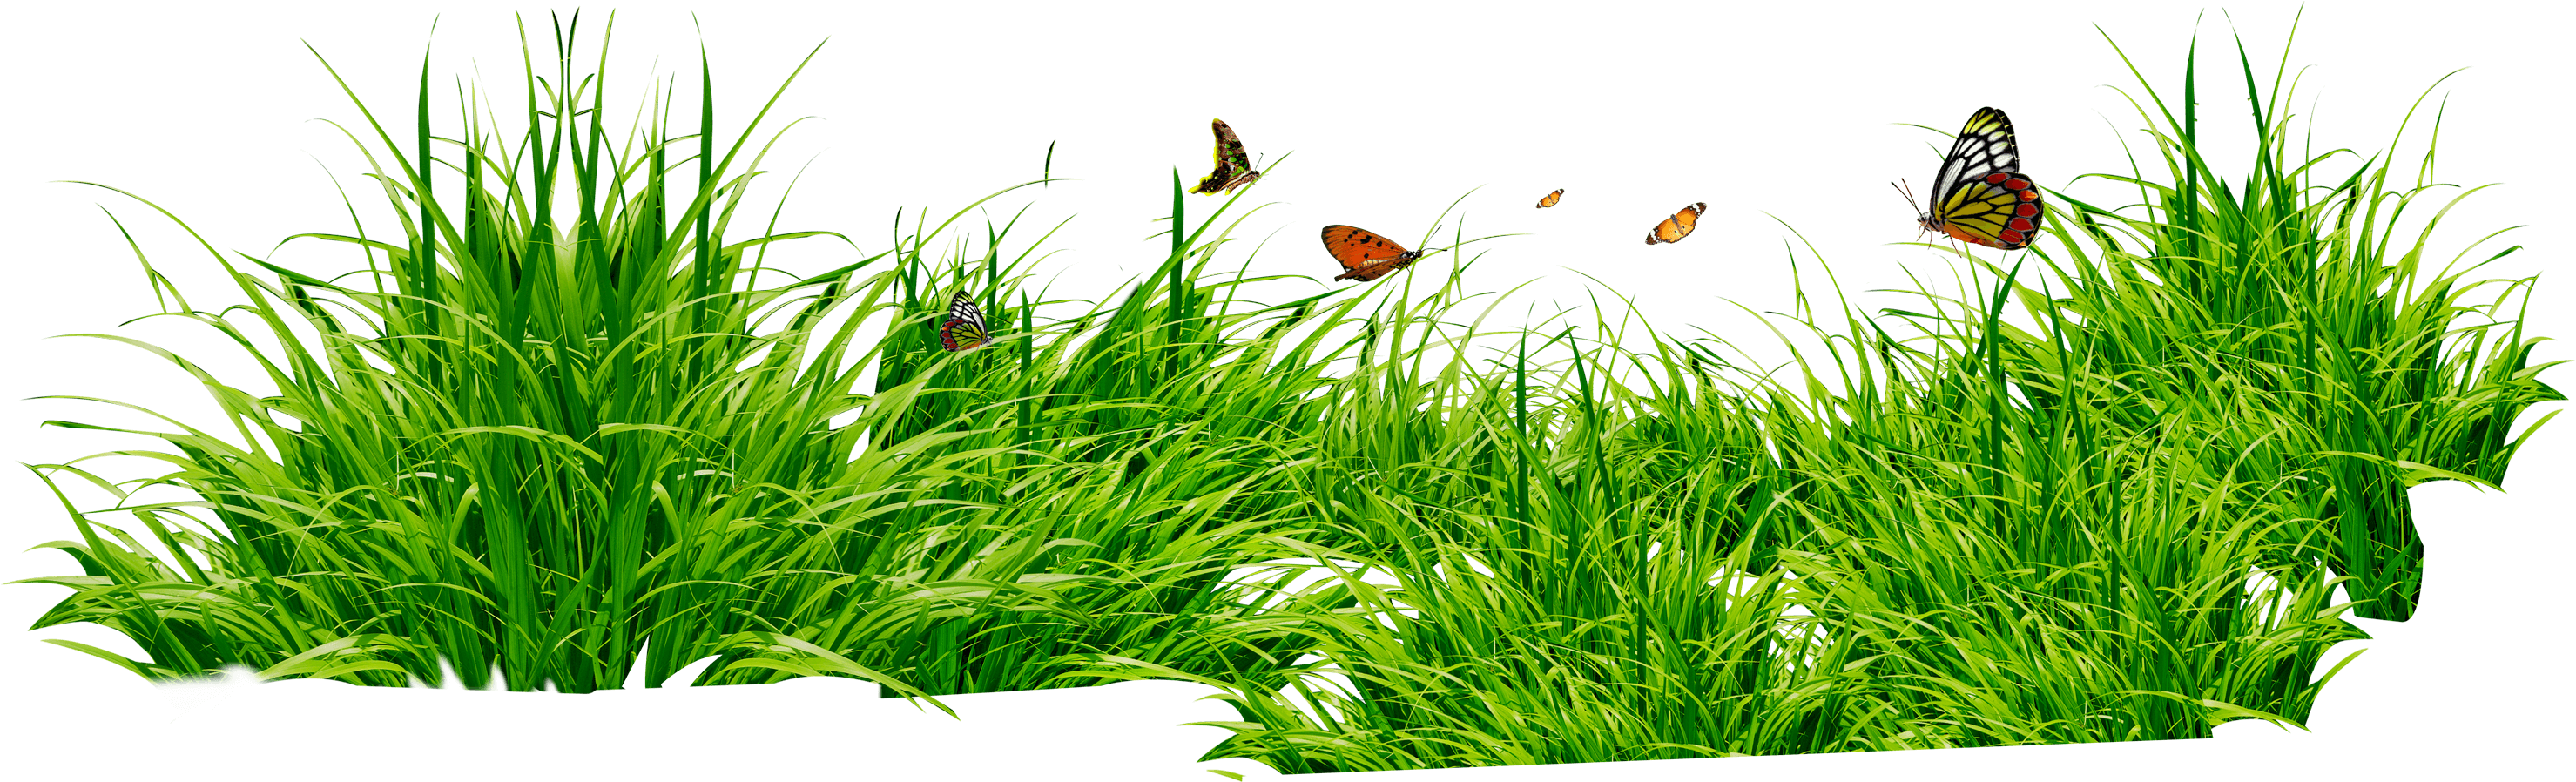 land clipart greengrass